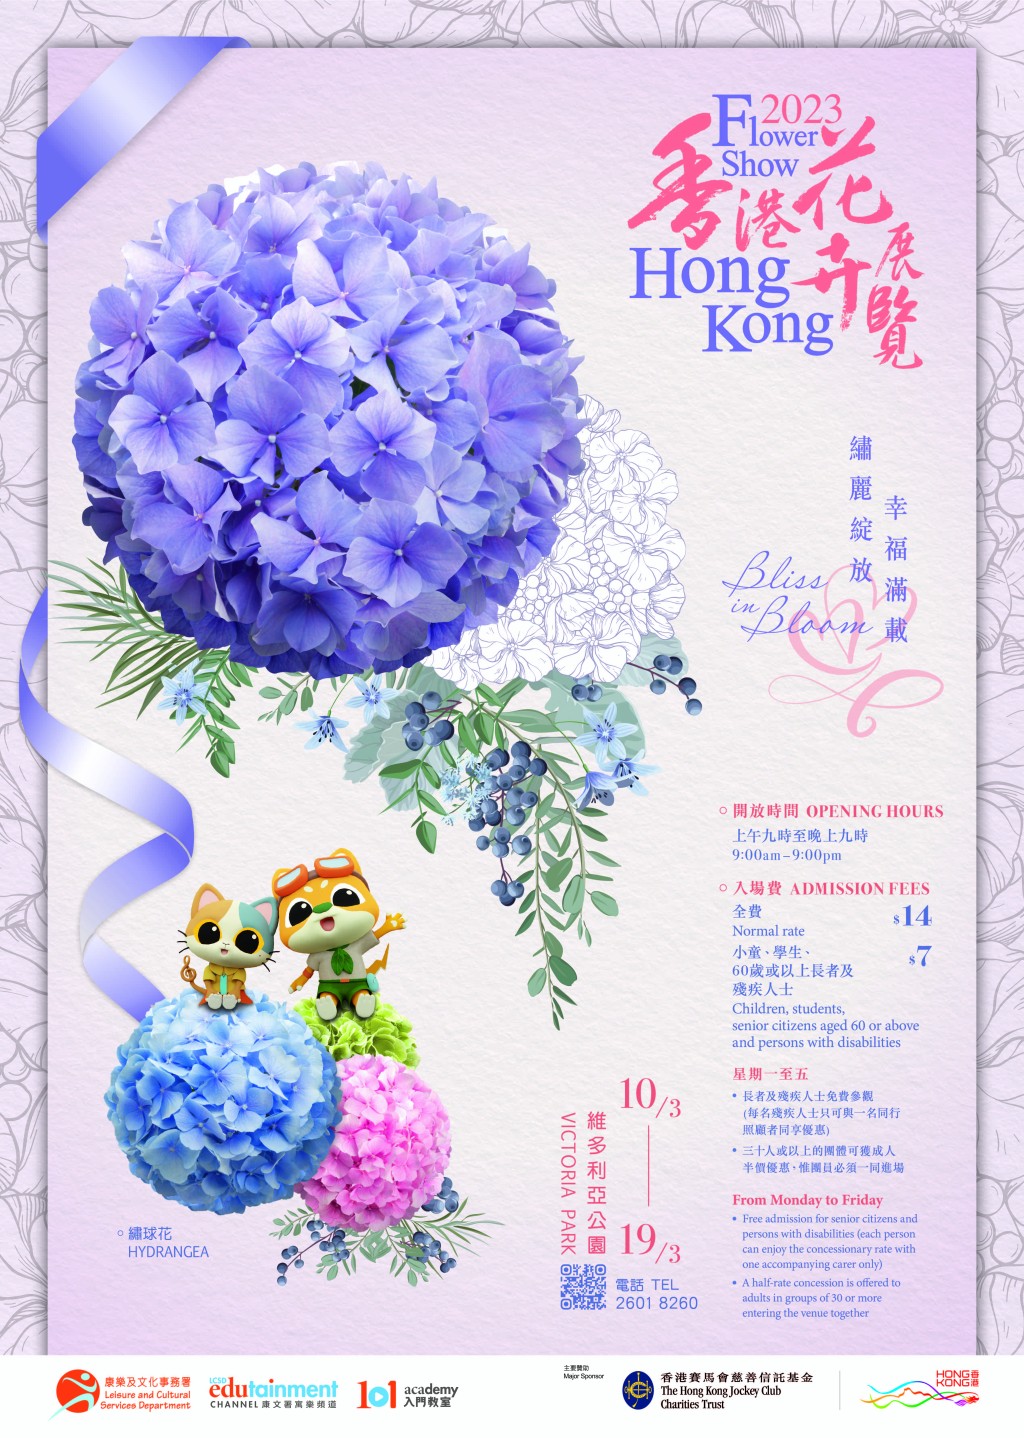 香港花卉展覽因疫情影響已停辦實體展3年，今年將重新復辦實體展